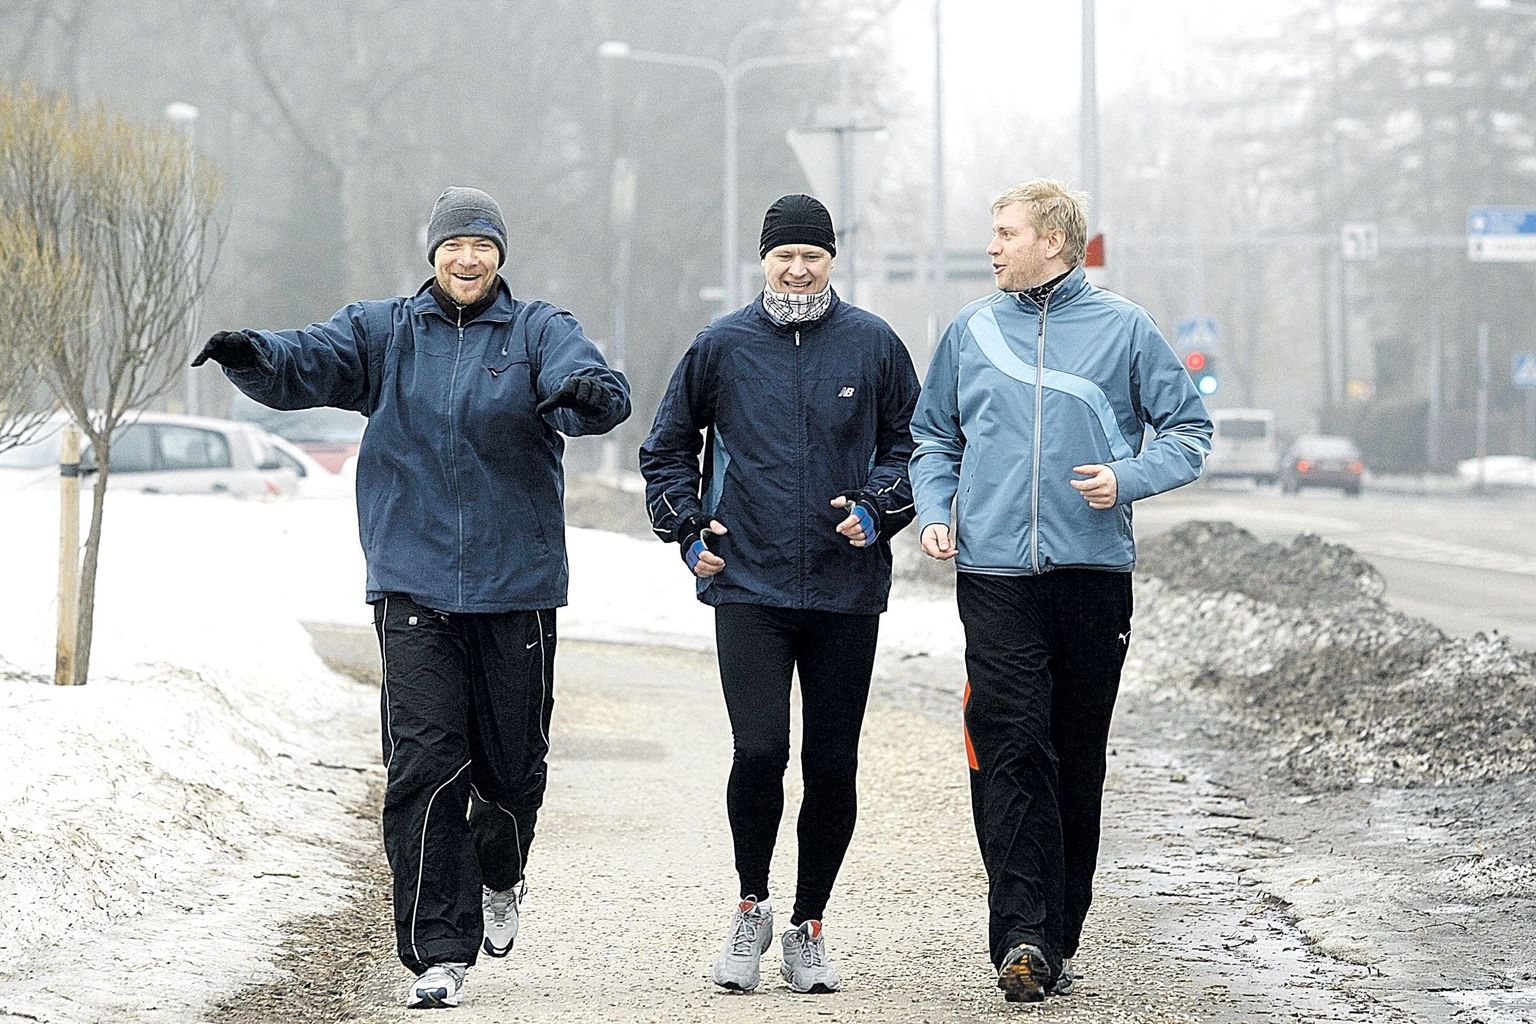 Nädalas jooksevad näitlejad Riho Kütsar (vasakult, 194 cm, 106 kg), Leino Rei (199 cm, 97 kg) ja Tanel Jonas (190 cm, 95 kg) 30–40 kilomeetrit. Tavaliselt jääb trenn pealelõunasesse aega, kui proov on lõppenud. Jooksumehi võib kohata ka Raadi mõisa kõrval kulgeval rattateel.